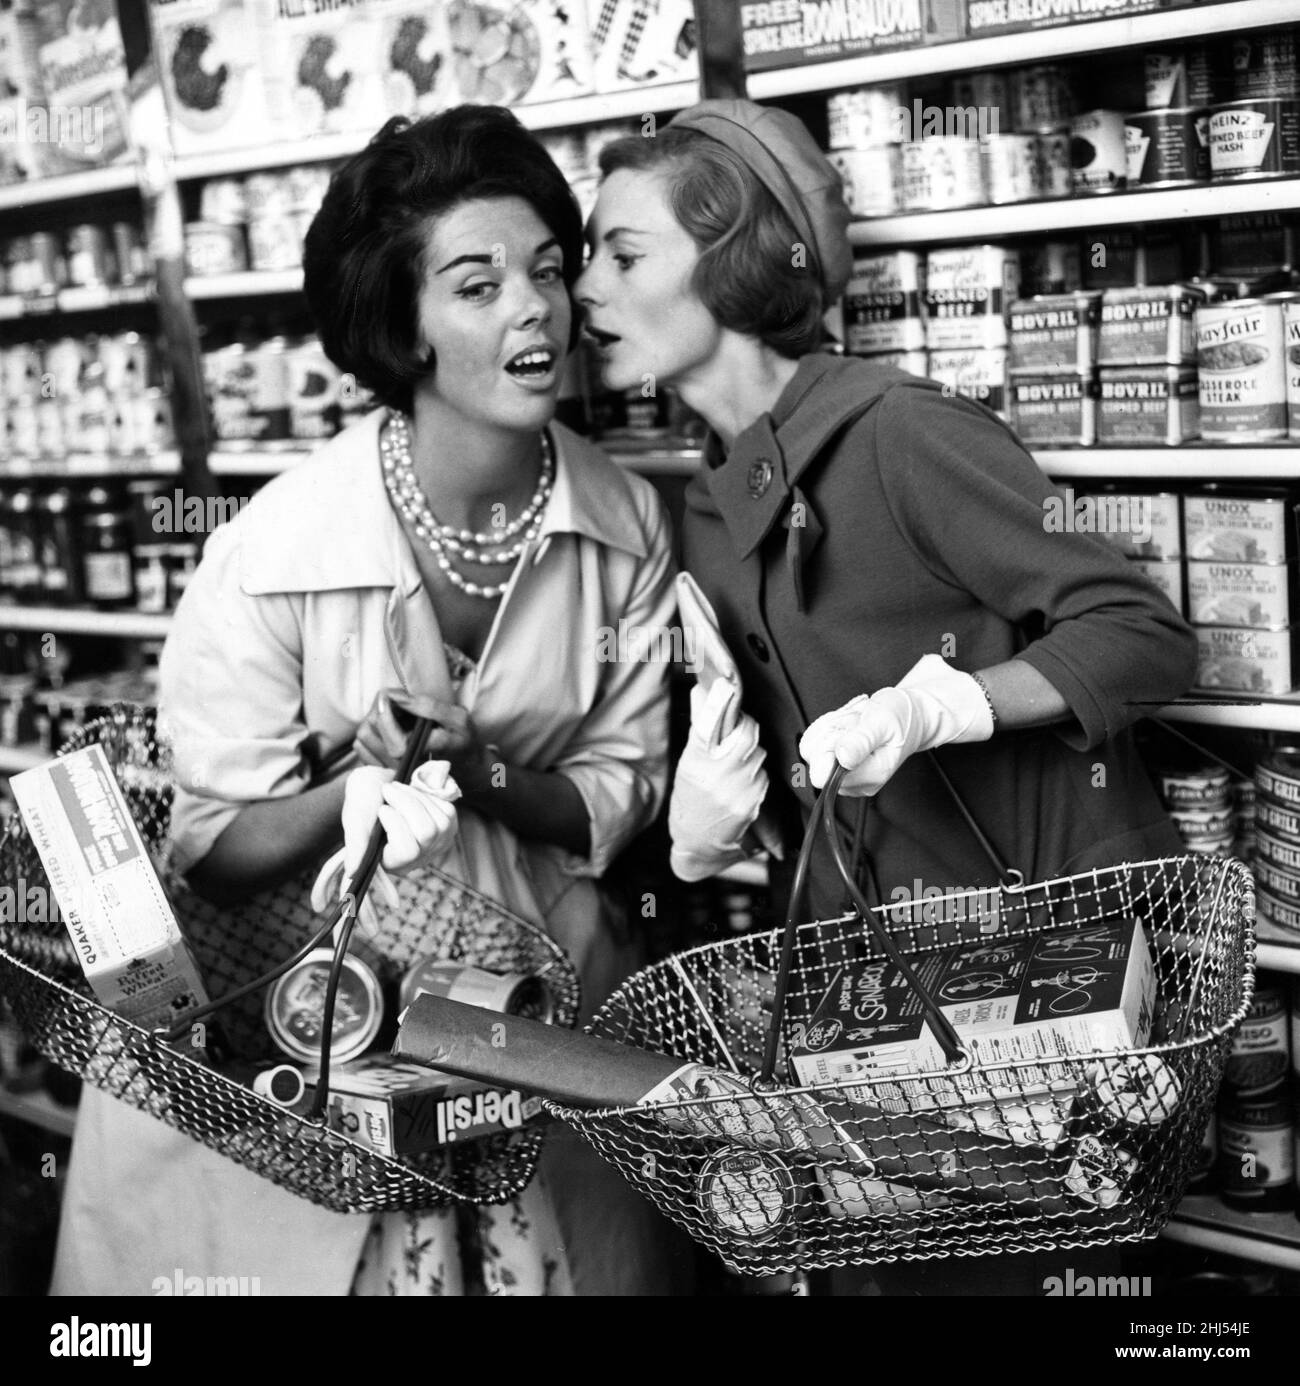 Deux femmes chuchotent l'une à l'autre dans l'allée du magasin, 9th septembre 1960."Ils disent que vous ne pouvez pas faire sans la campagne de marketing de miroir de Nouvelle femme" pour promouvoir le lancement de miroir de femme, "le magazine d'information pour les femmes".Publié en 1960-67, en 1967, il a été fusionné en femme titre sœur. Banque D'Images